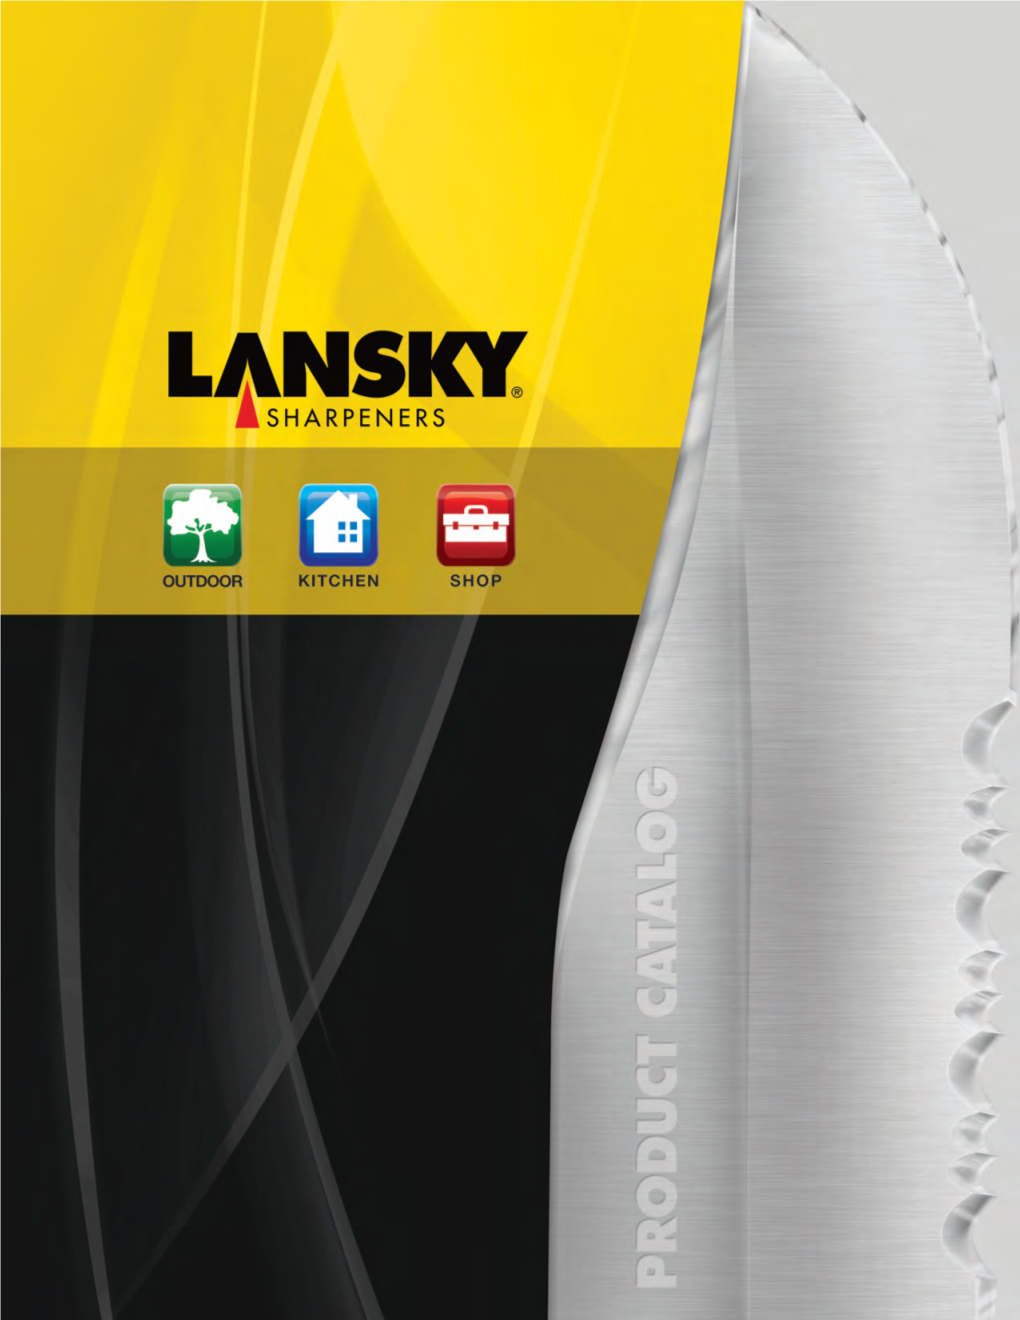 LANSKY Catalog 2015 for Web